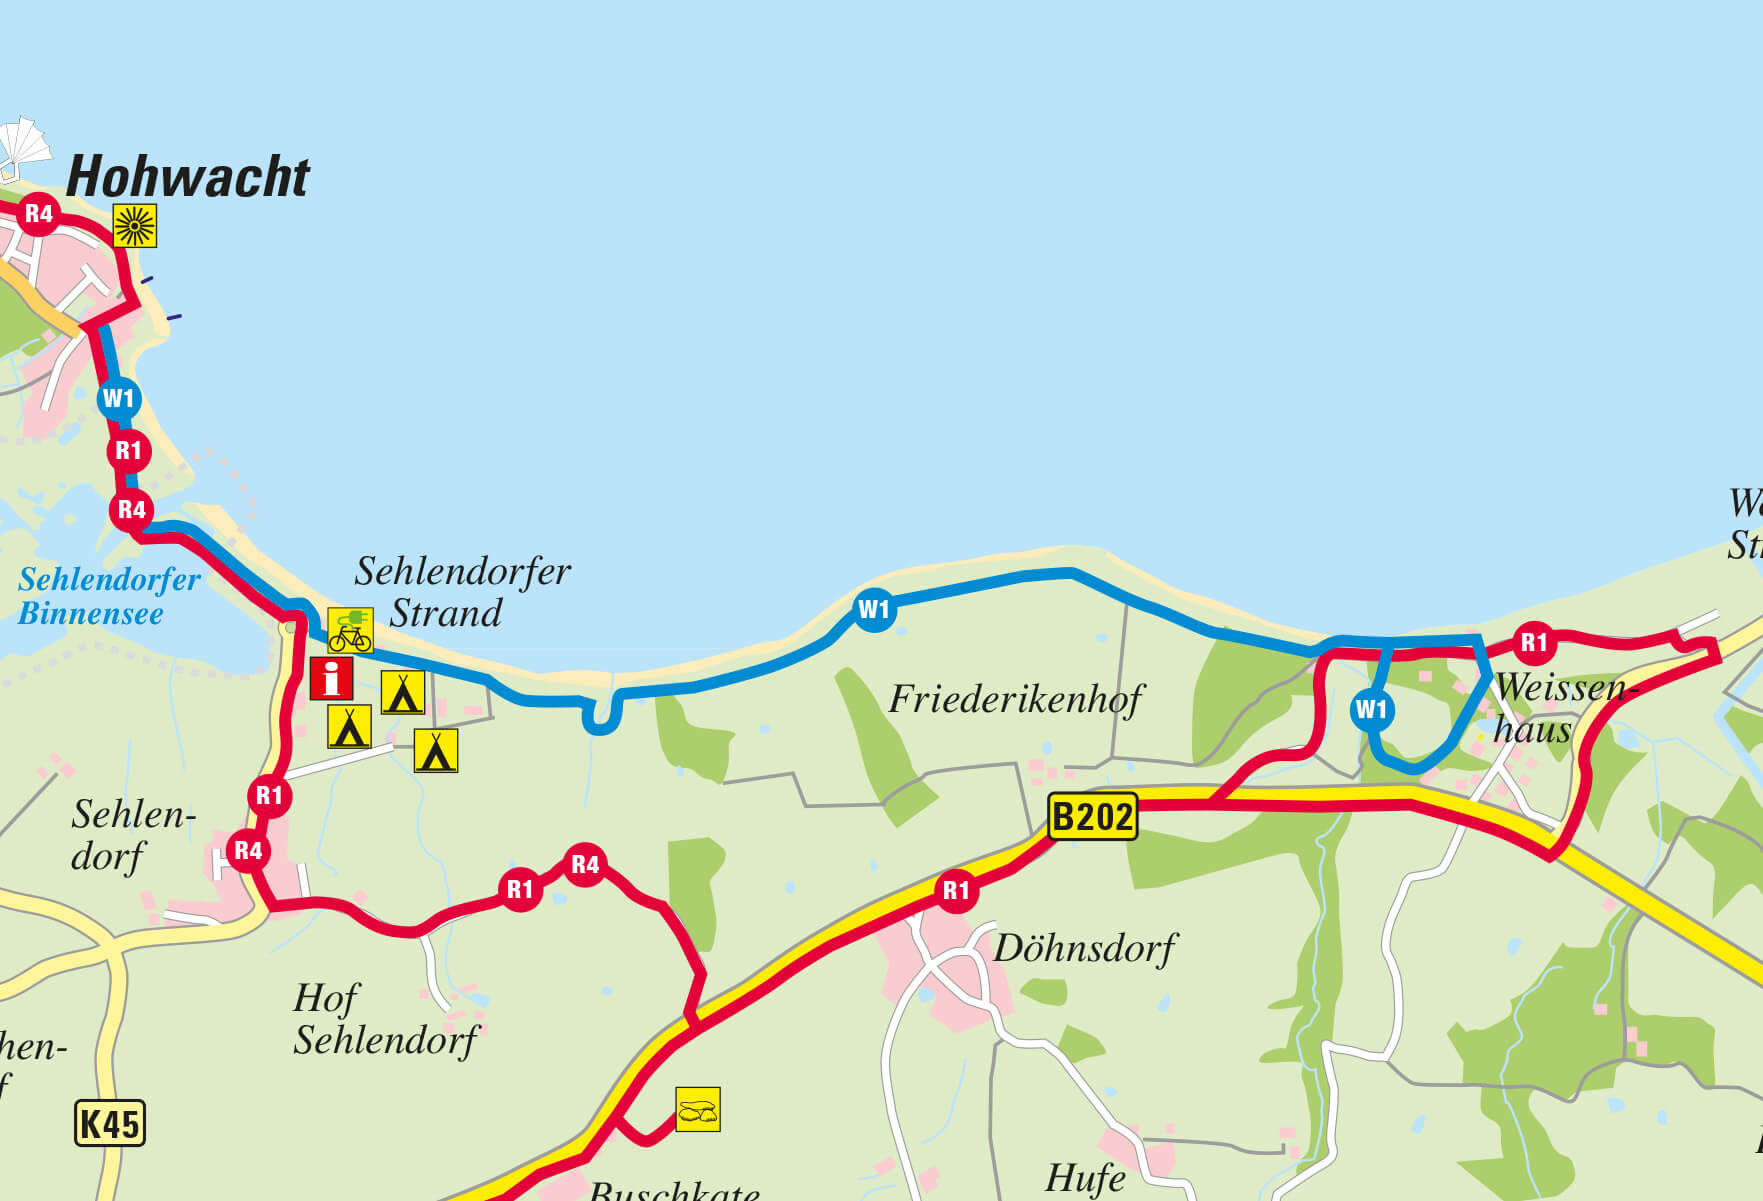 Randfahrroute von Hohwacht bis Weissenhaus an Döhnsdorf, Sehlendorf und Buschkarte